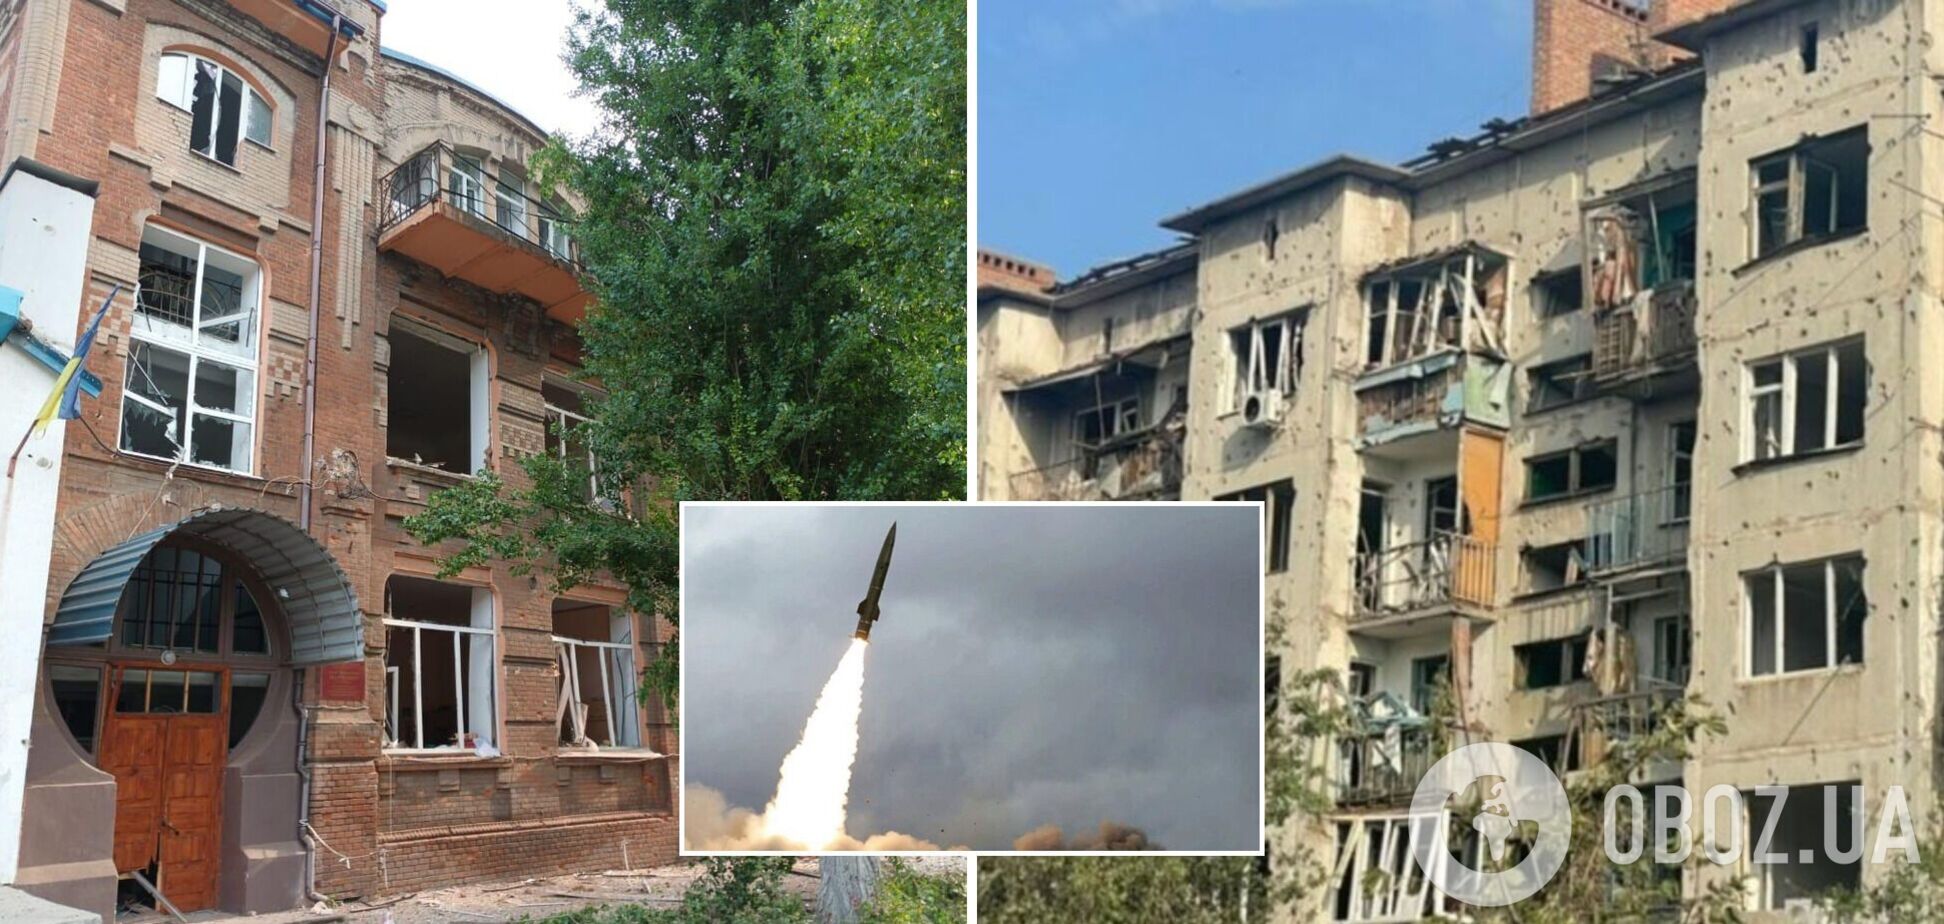 Квартира выгорела дотла, трех людей спасти не удалось: новые подробности ракетного удара по Славянску